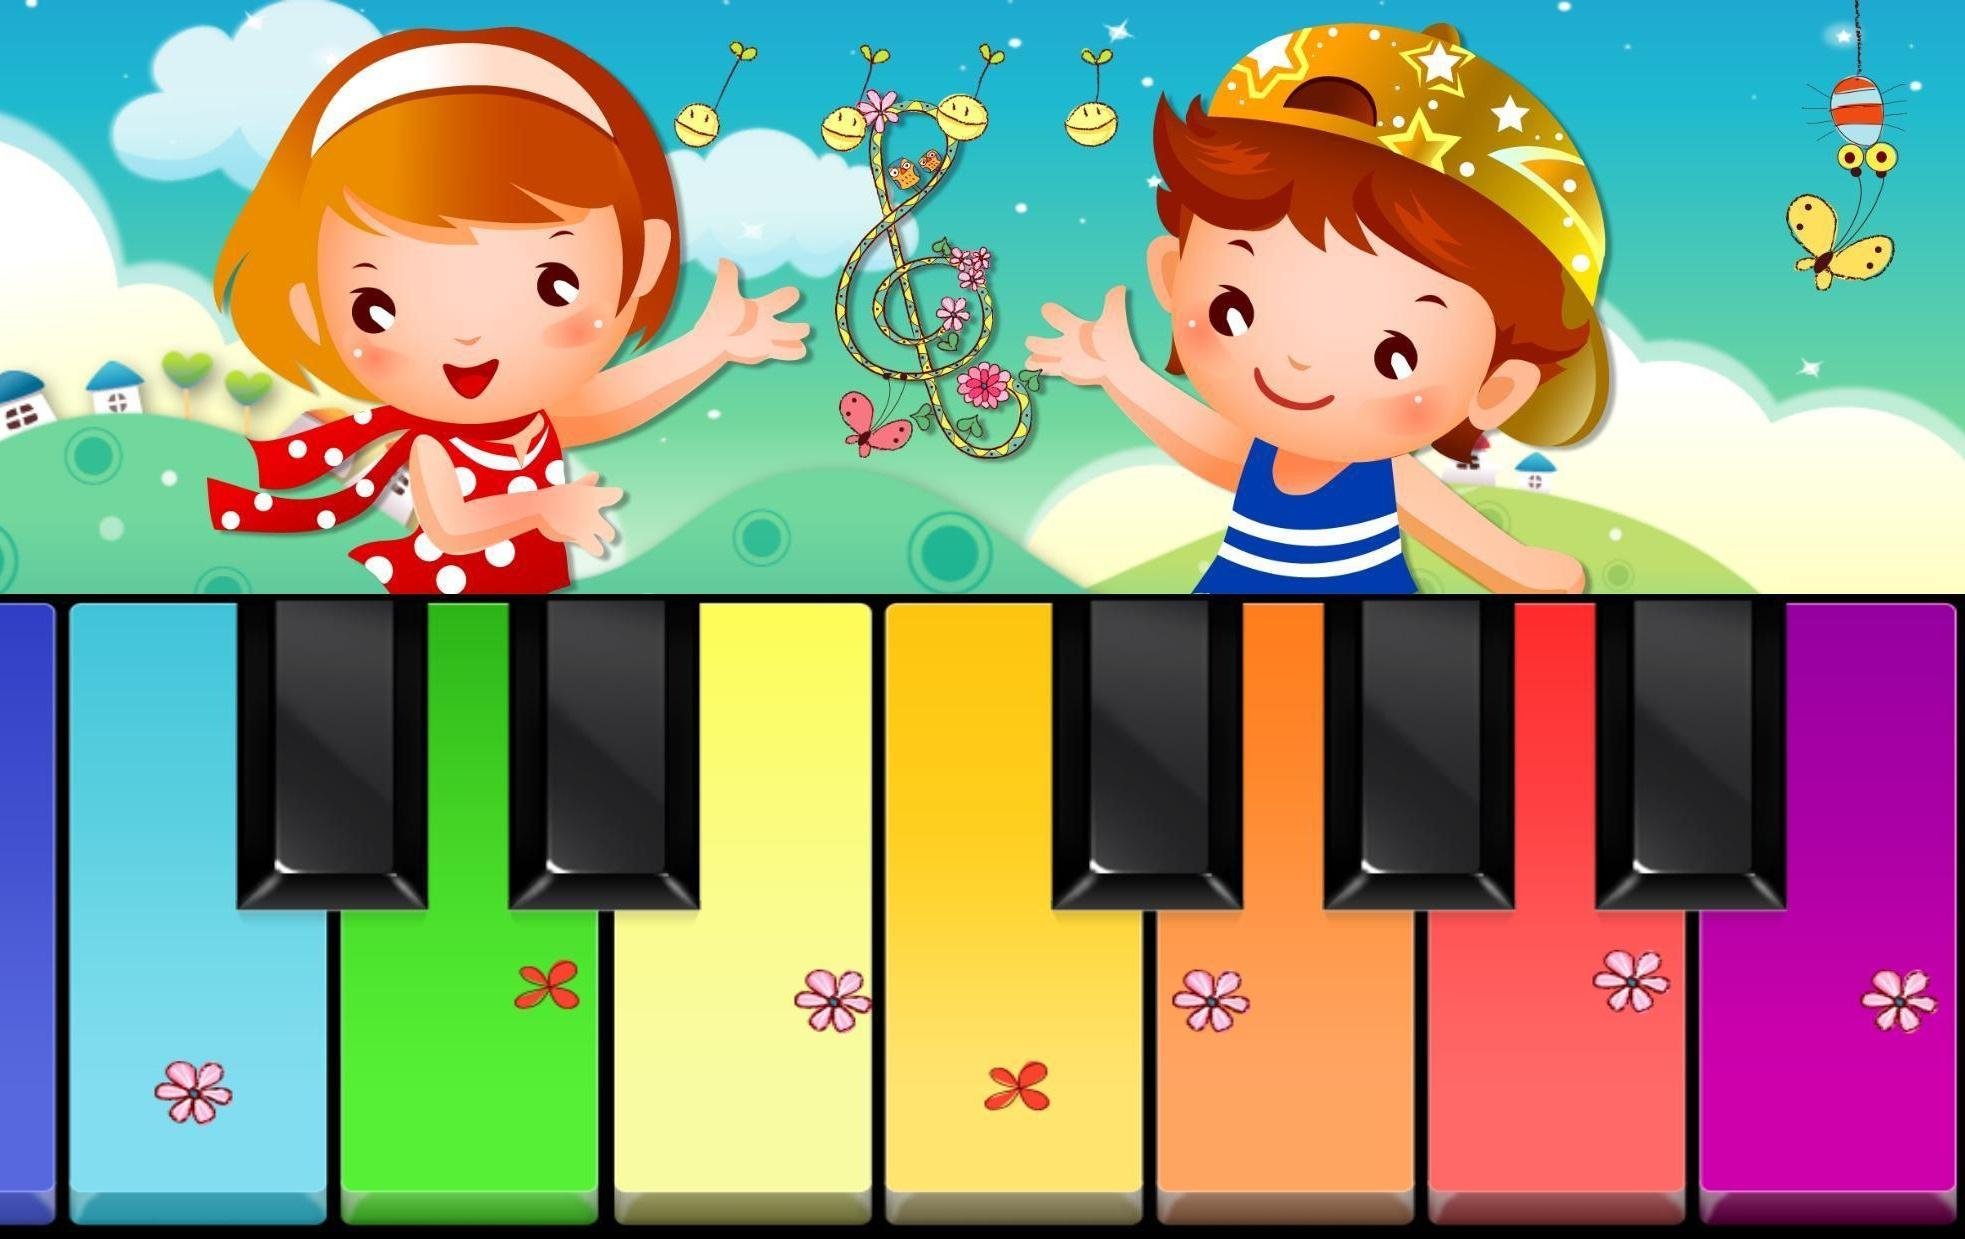 Музыкальные игры 1 4. Музыкальное занятие в детском саду. Музыкальное занятие в ДОУ. Музыкальные игры. Дети на музыкальном занятии в детском саду.